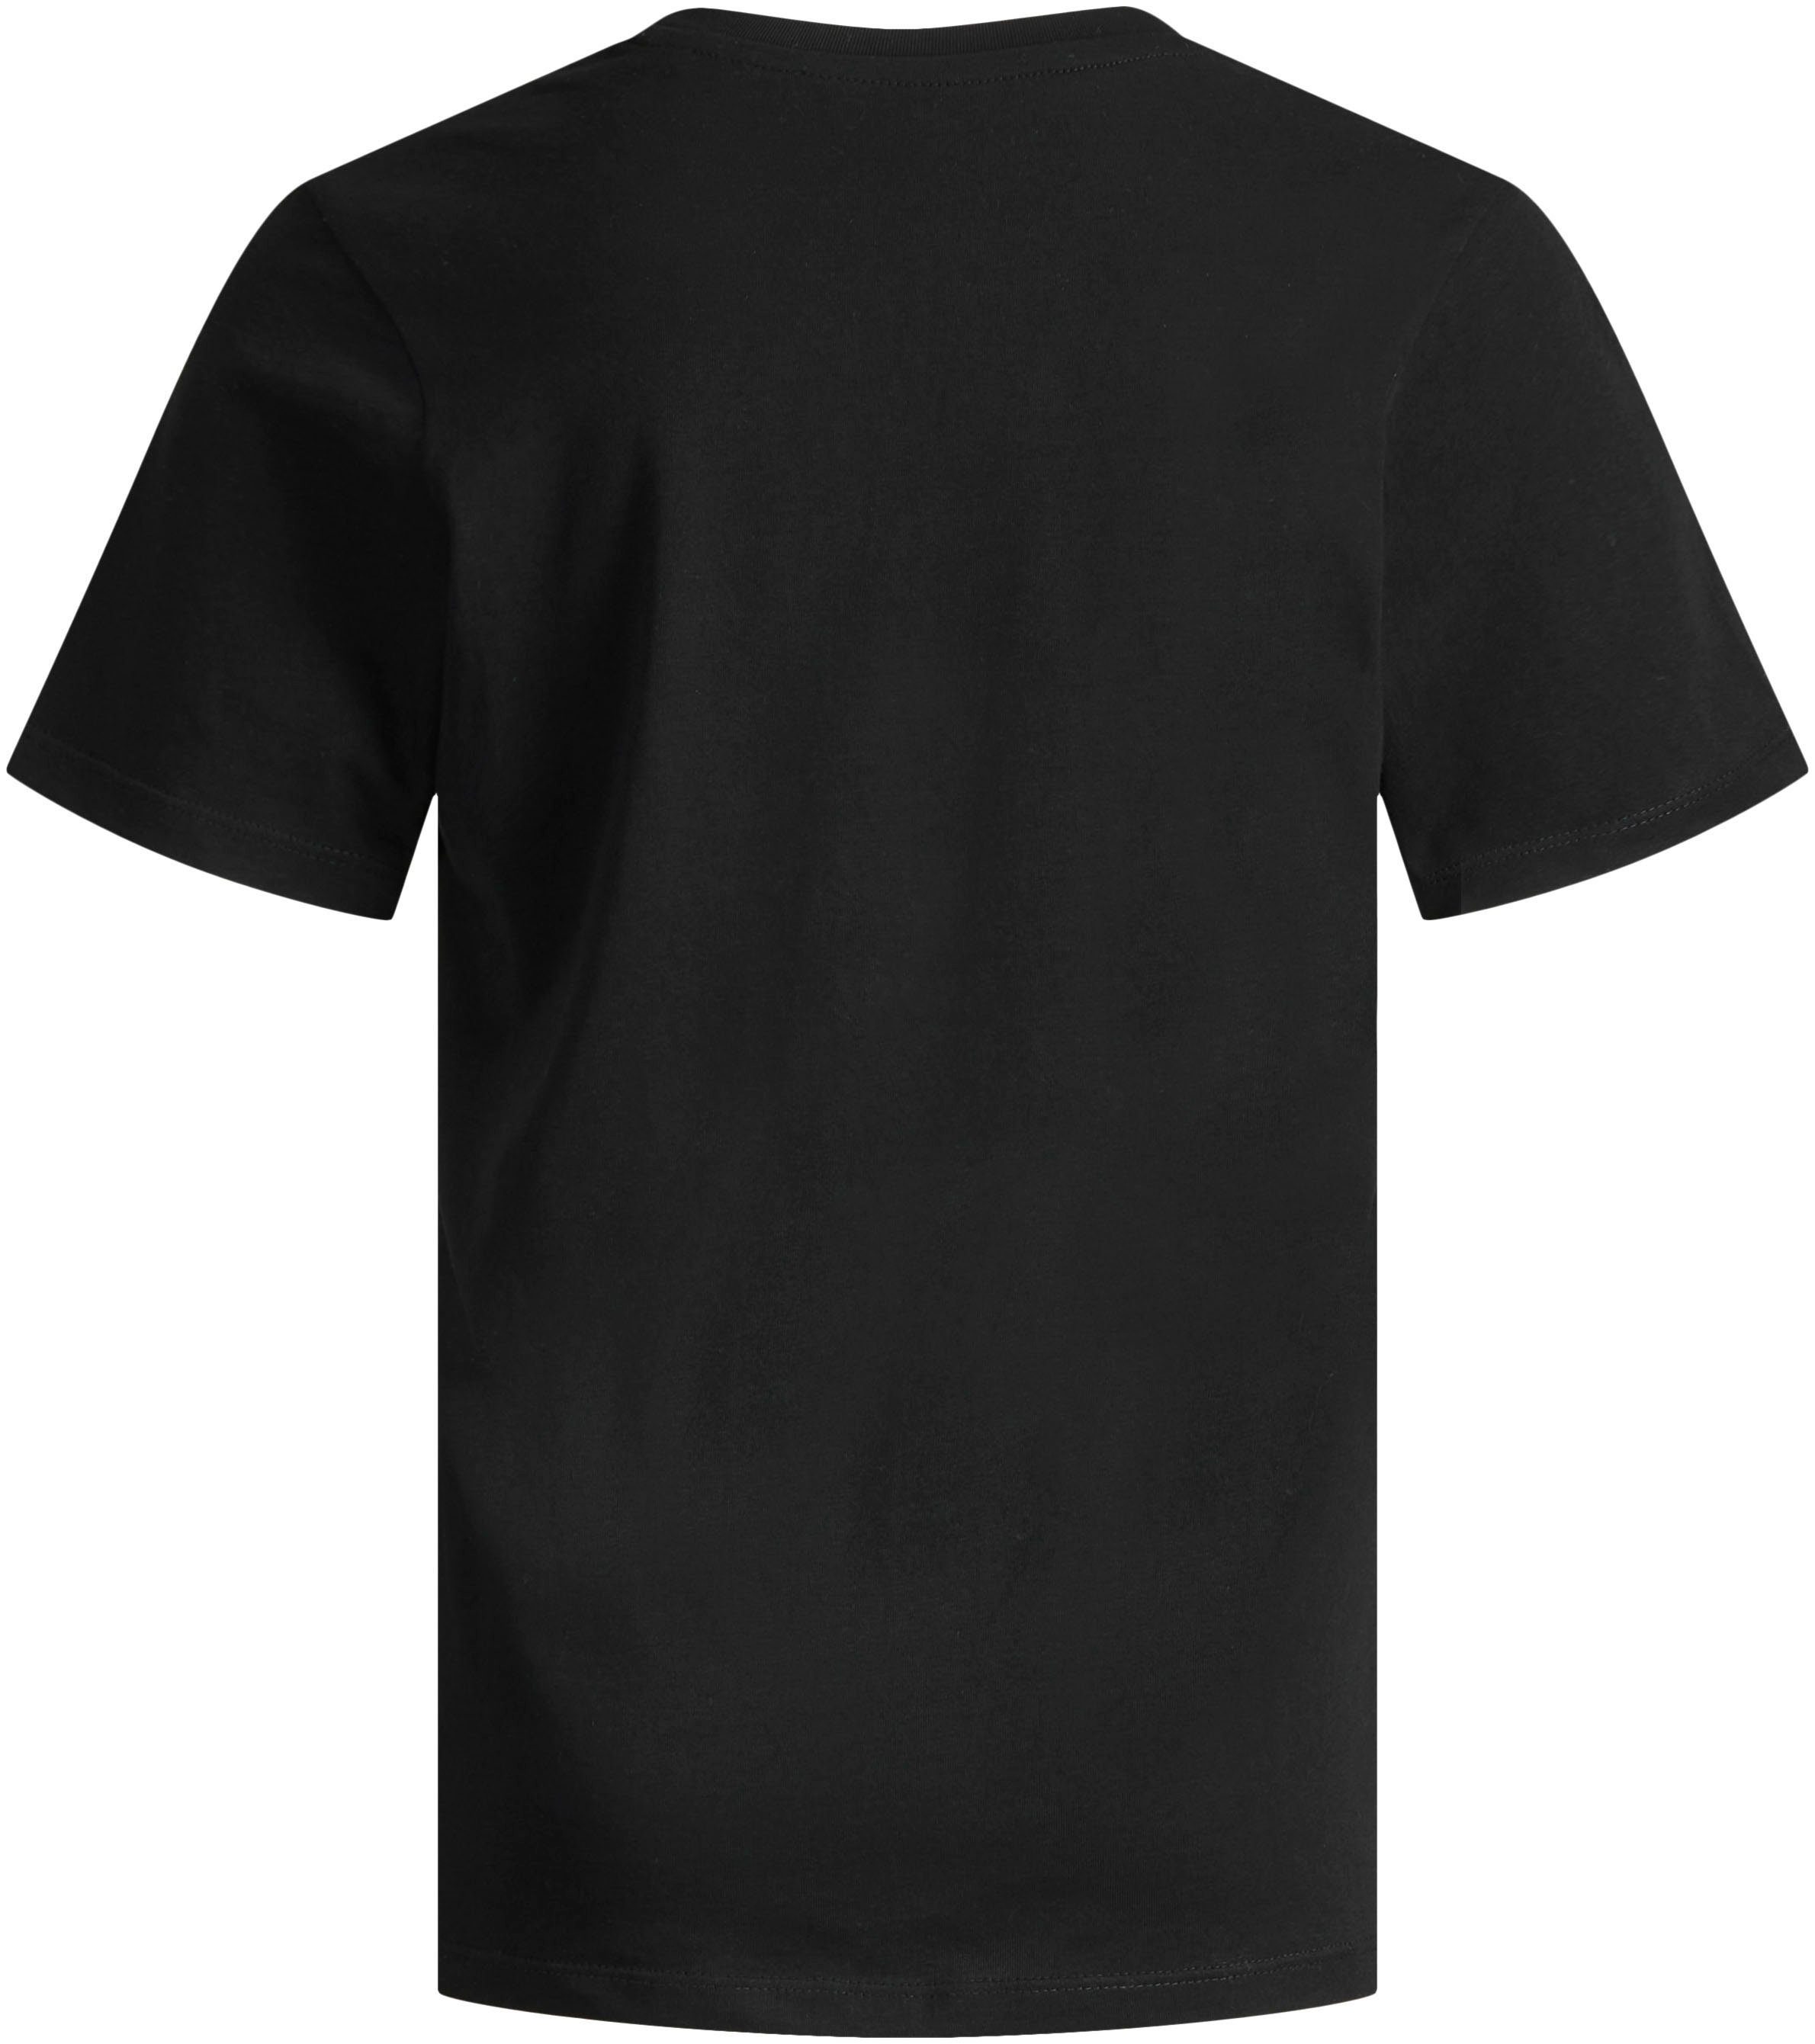 Jack & Jones schwarz TEE LOGO T-Shirt JECORP Junior CREW S/S